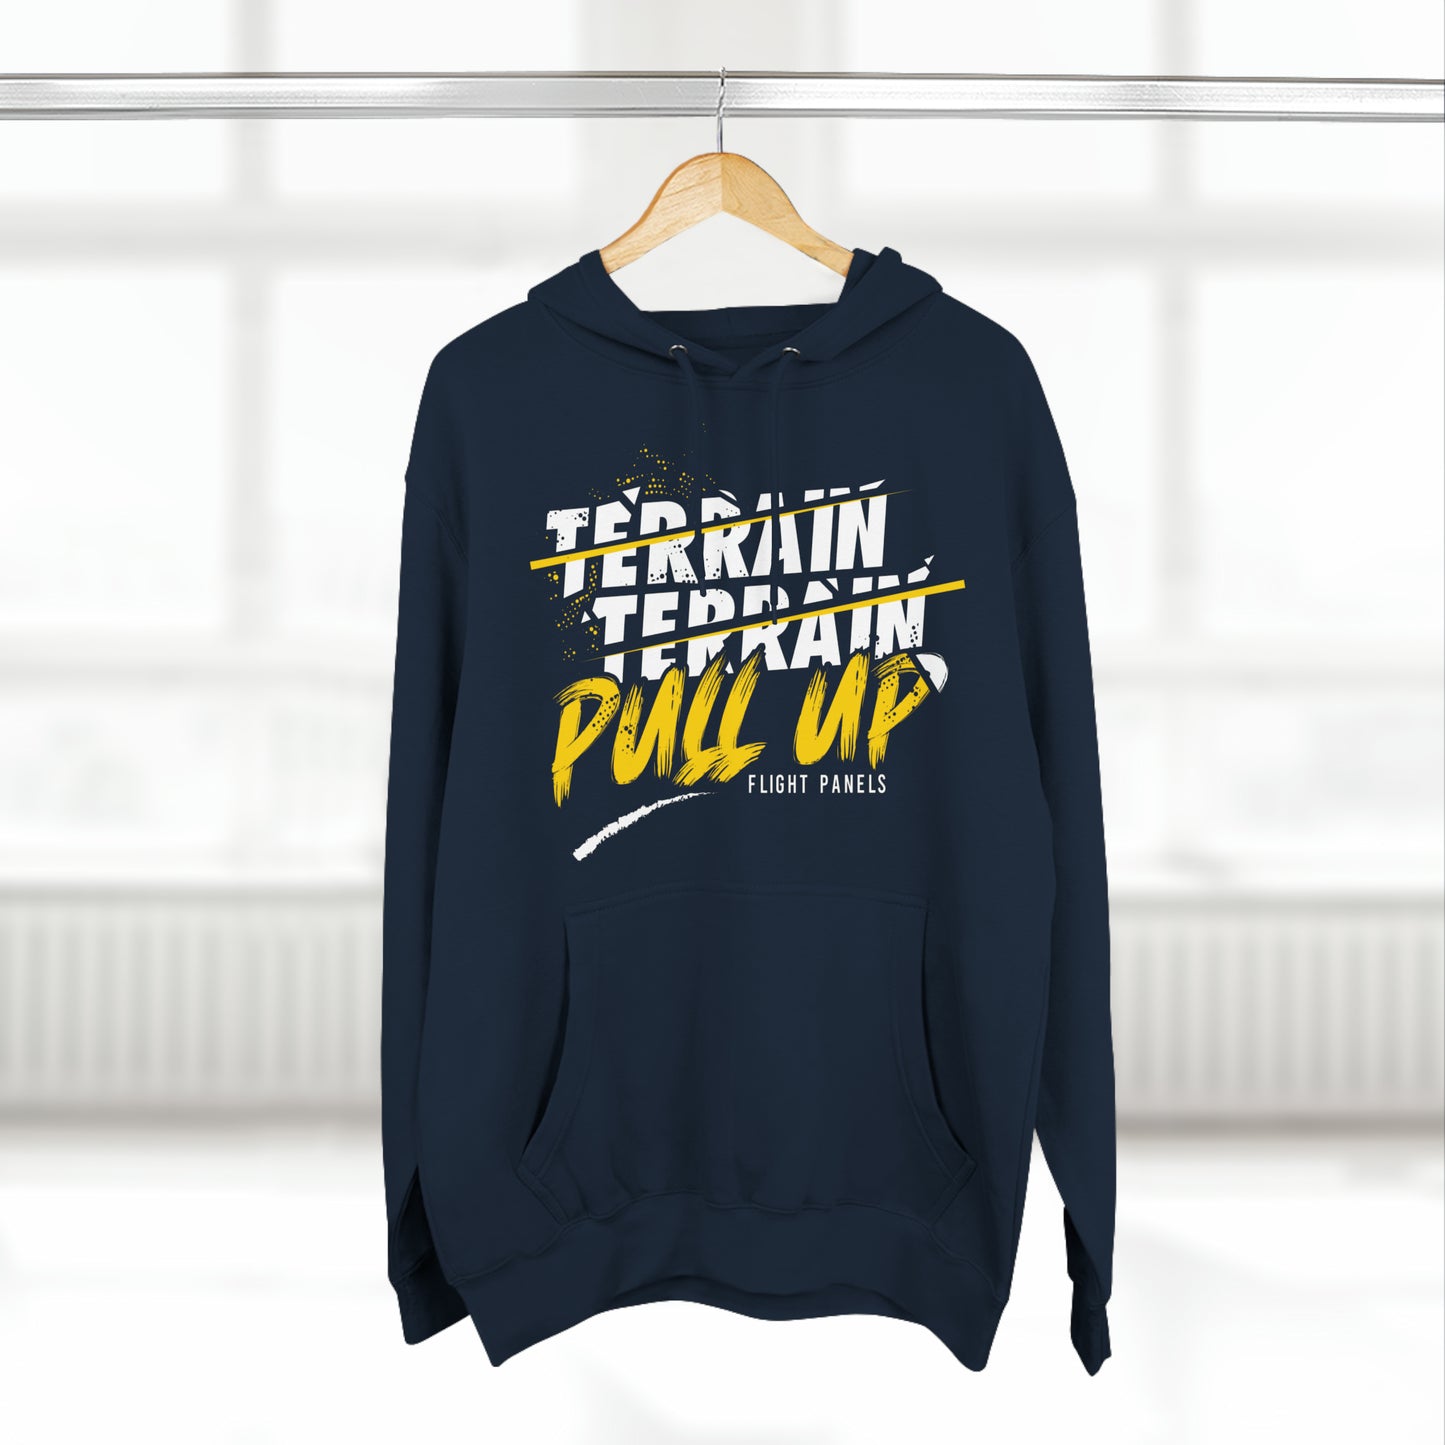 Unisex Premium Pullover Hoodie - "Terrain, Terrain, Pull Up!"